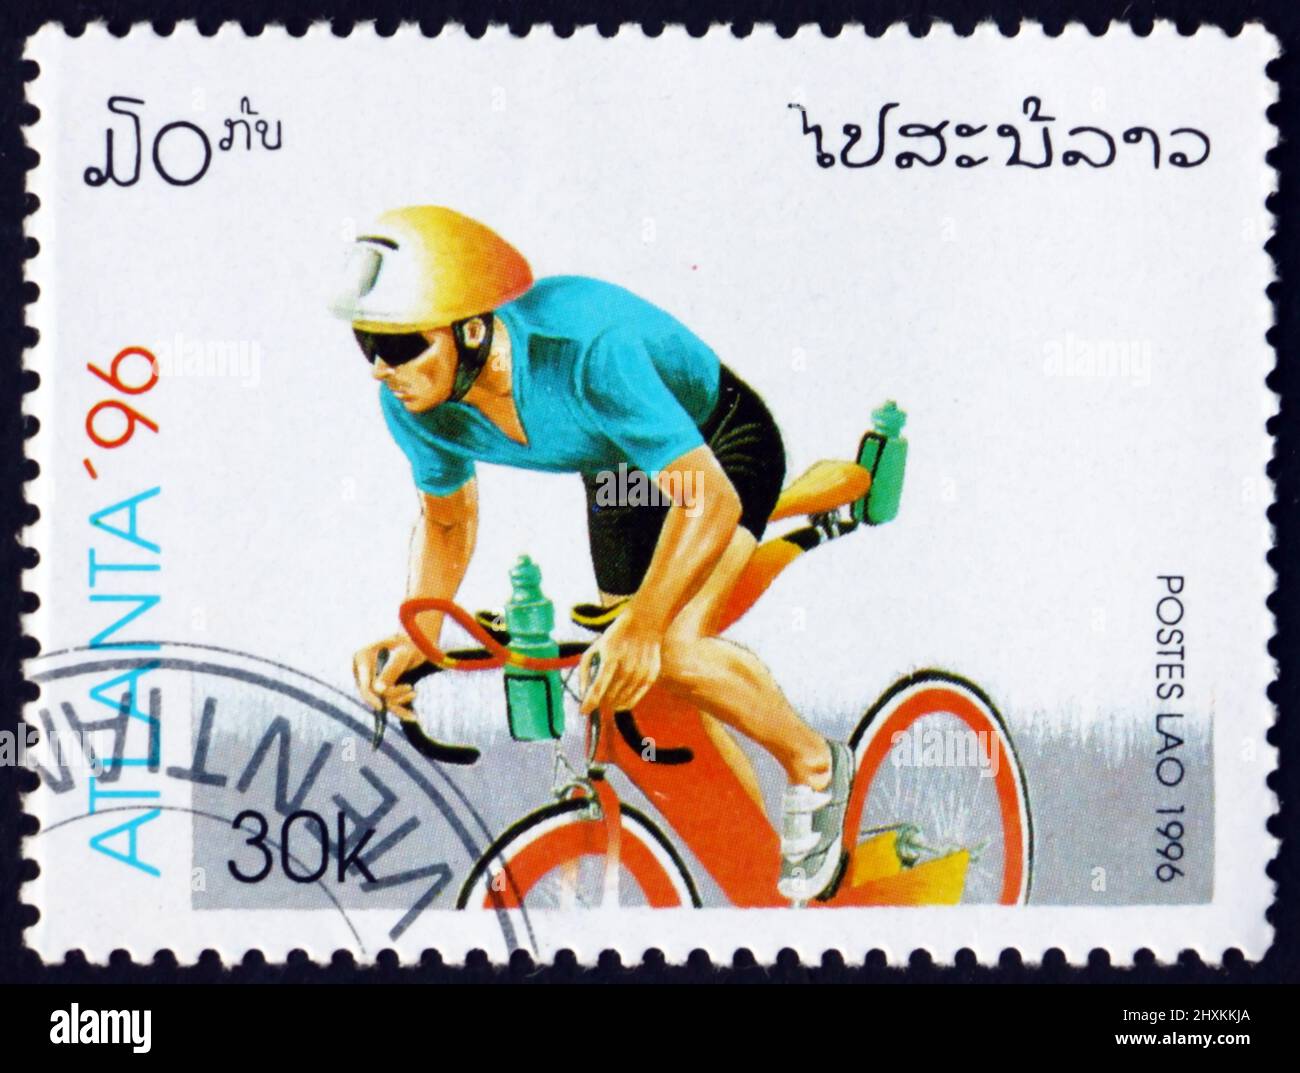 LAOS - CIRCA 1996: a stamp printed in Laos shows cycling, 1996 Summer Olympics, Atlanta, circa 1996 Stock Photo